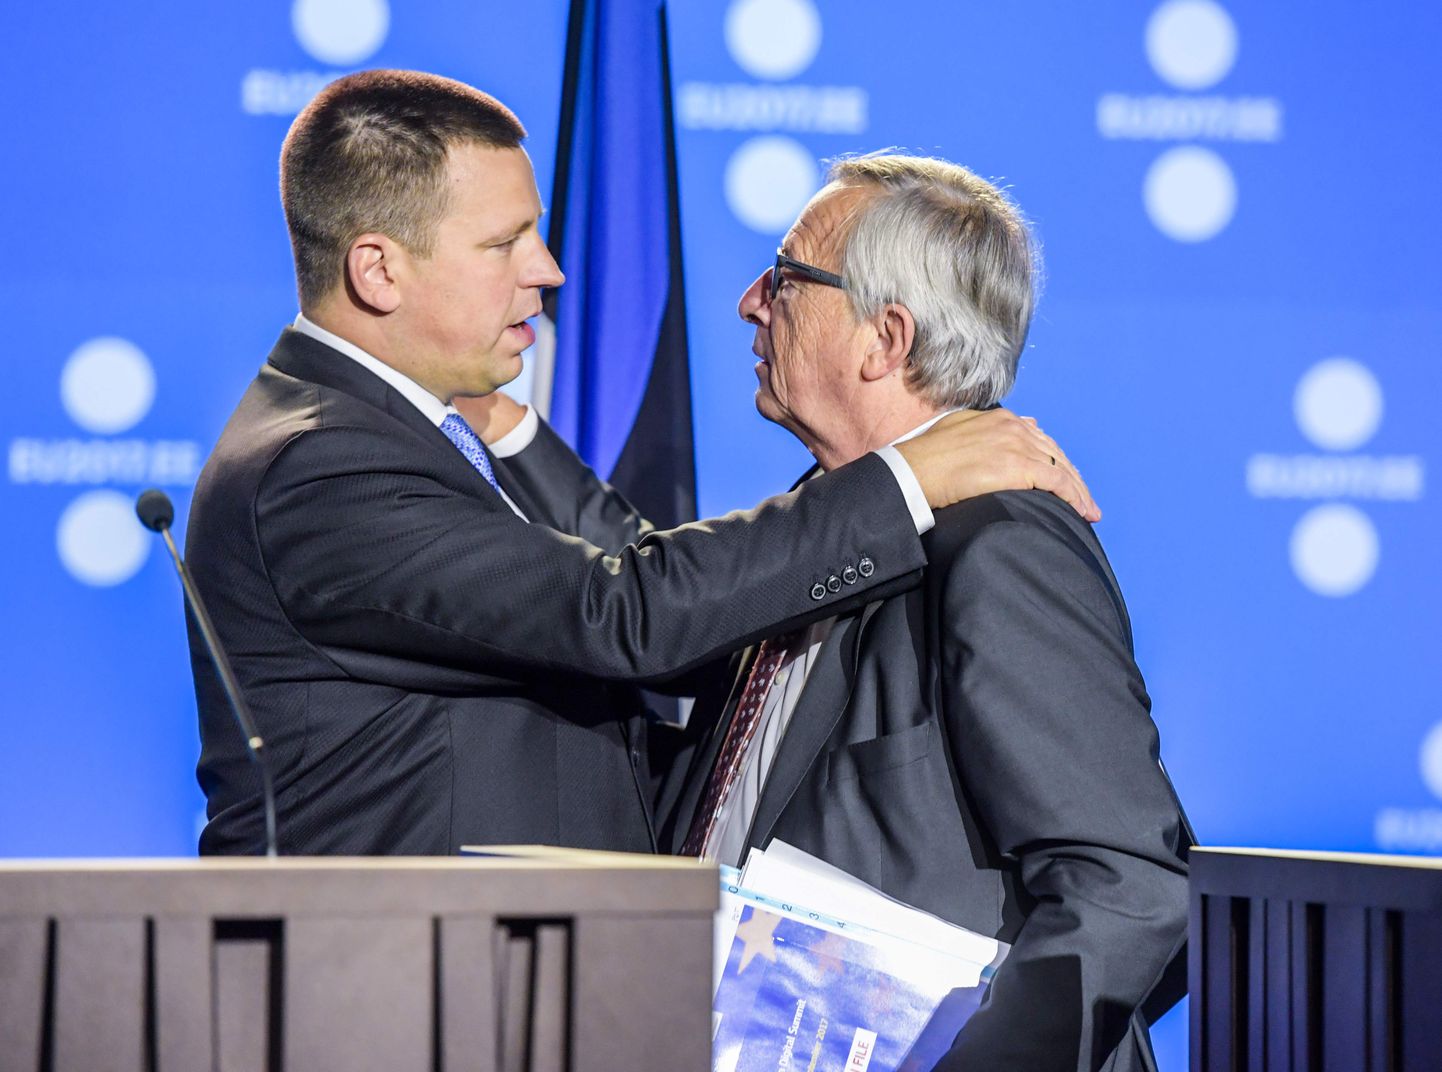 Pilt 2017. aasta Tallinna Digital Summitist. Pildil Jüri Ratas ja endine Euroopa Komisjoni president Jean-Claude Juncker